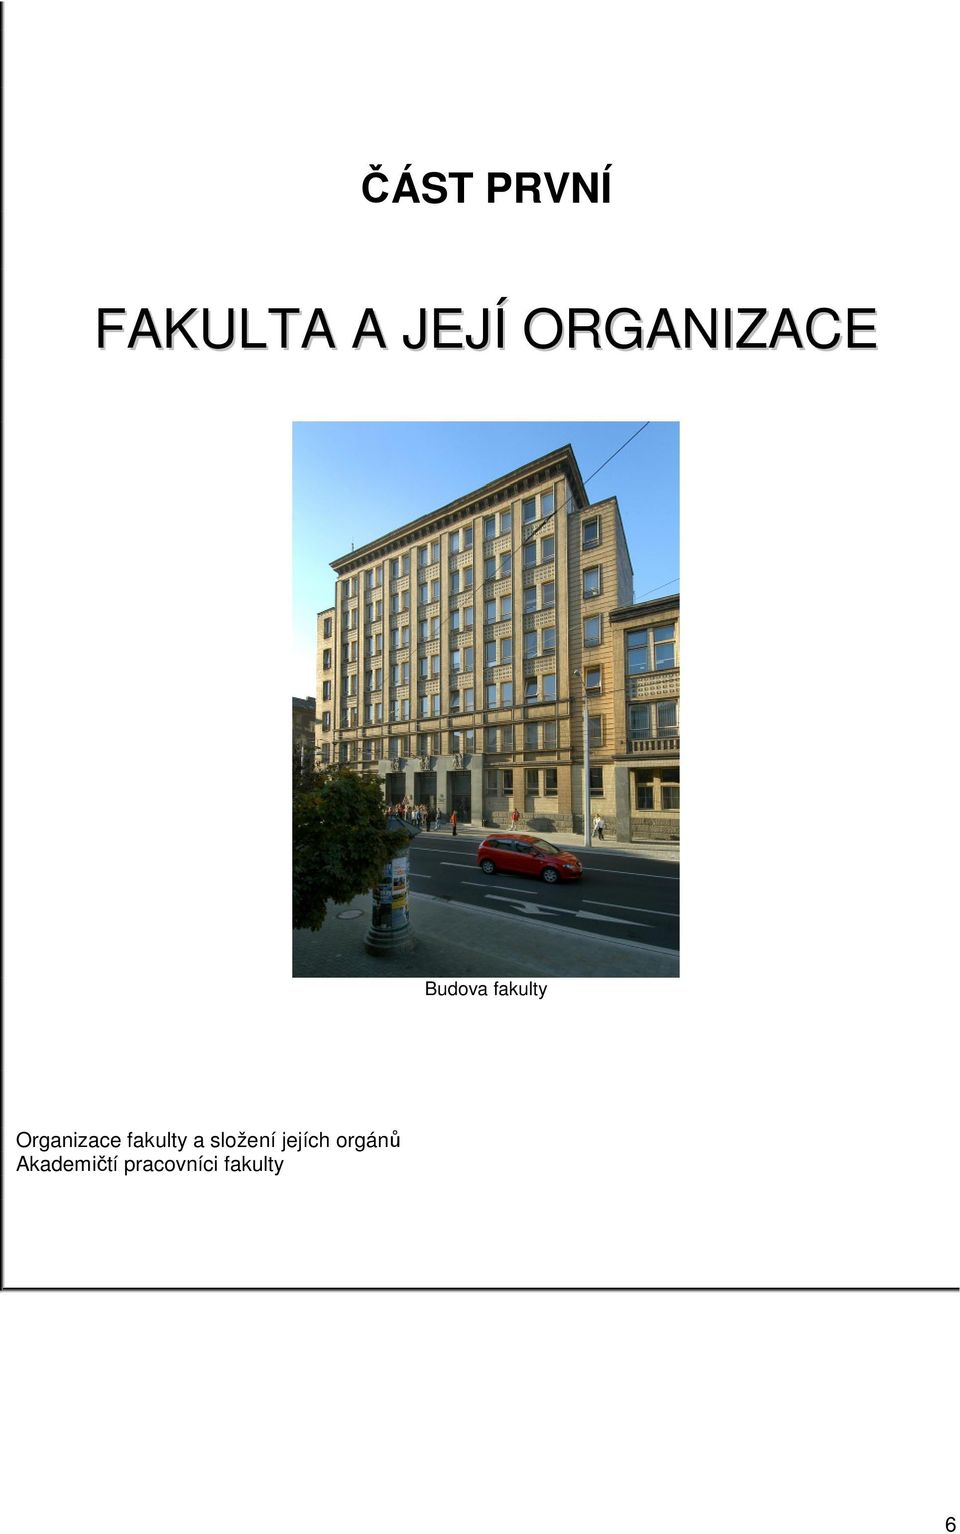 Organizace fakulty a složení